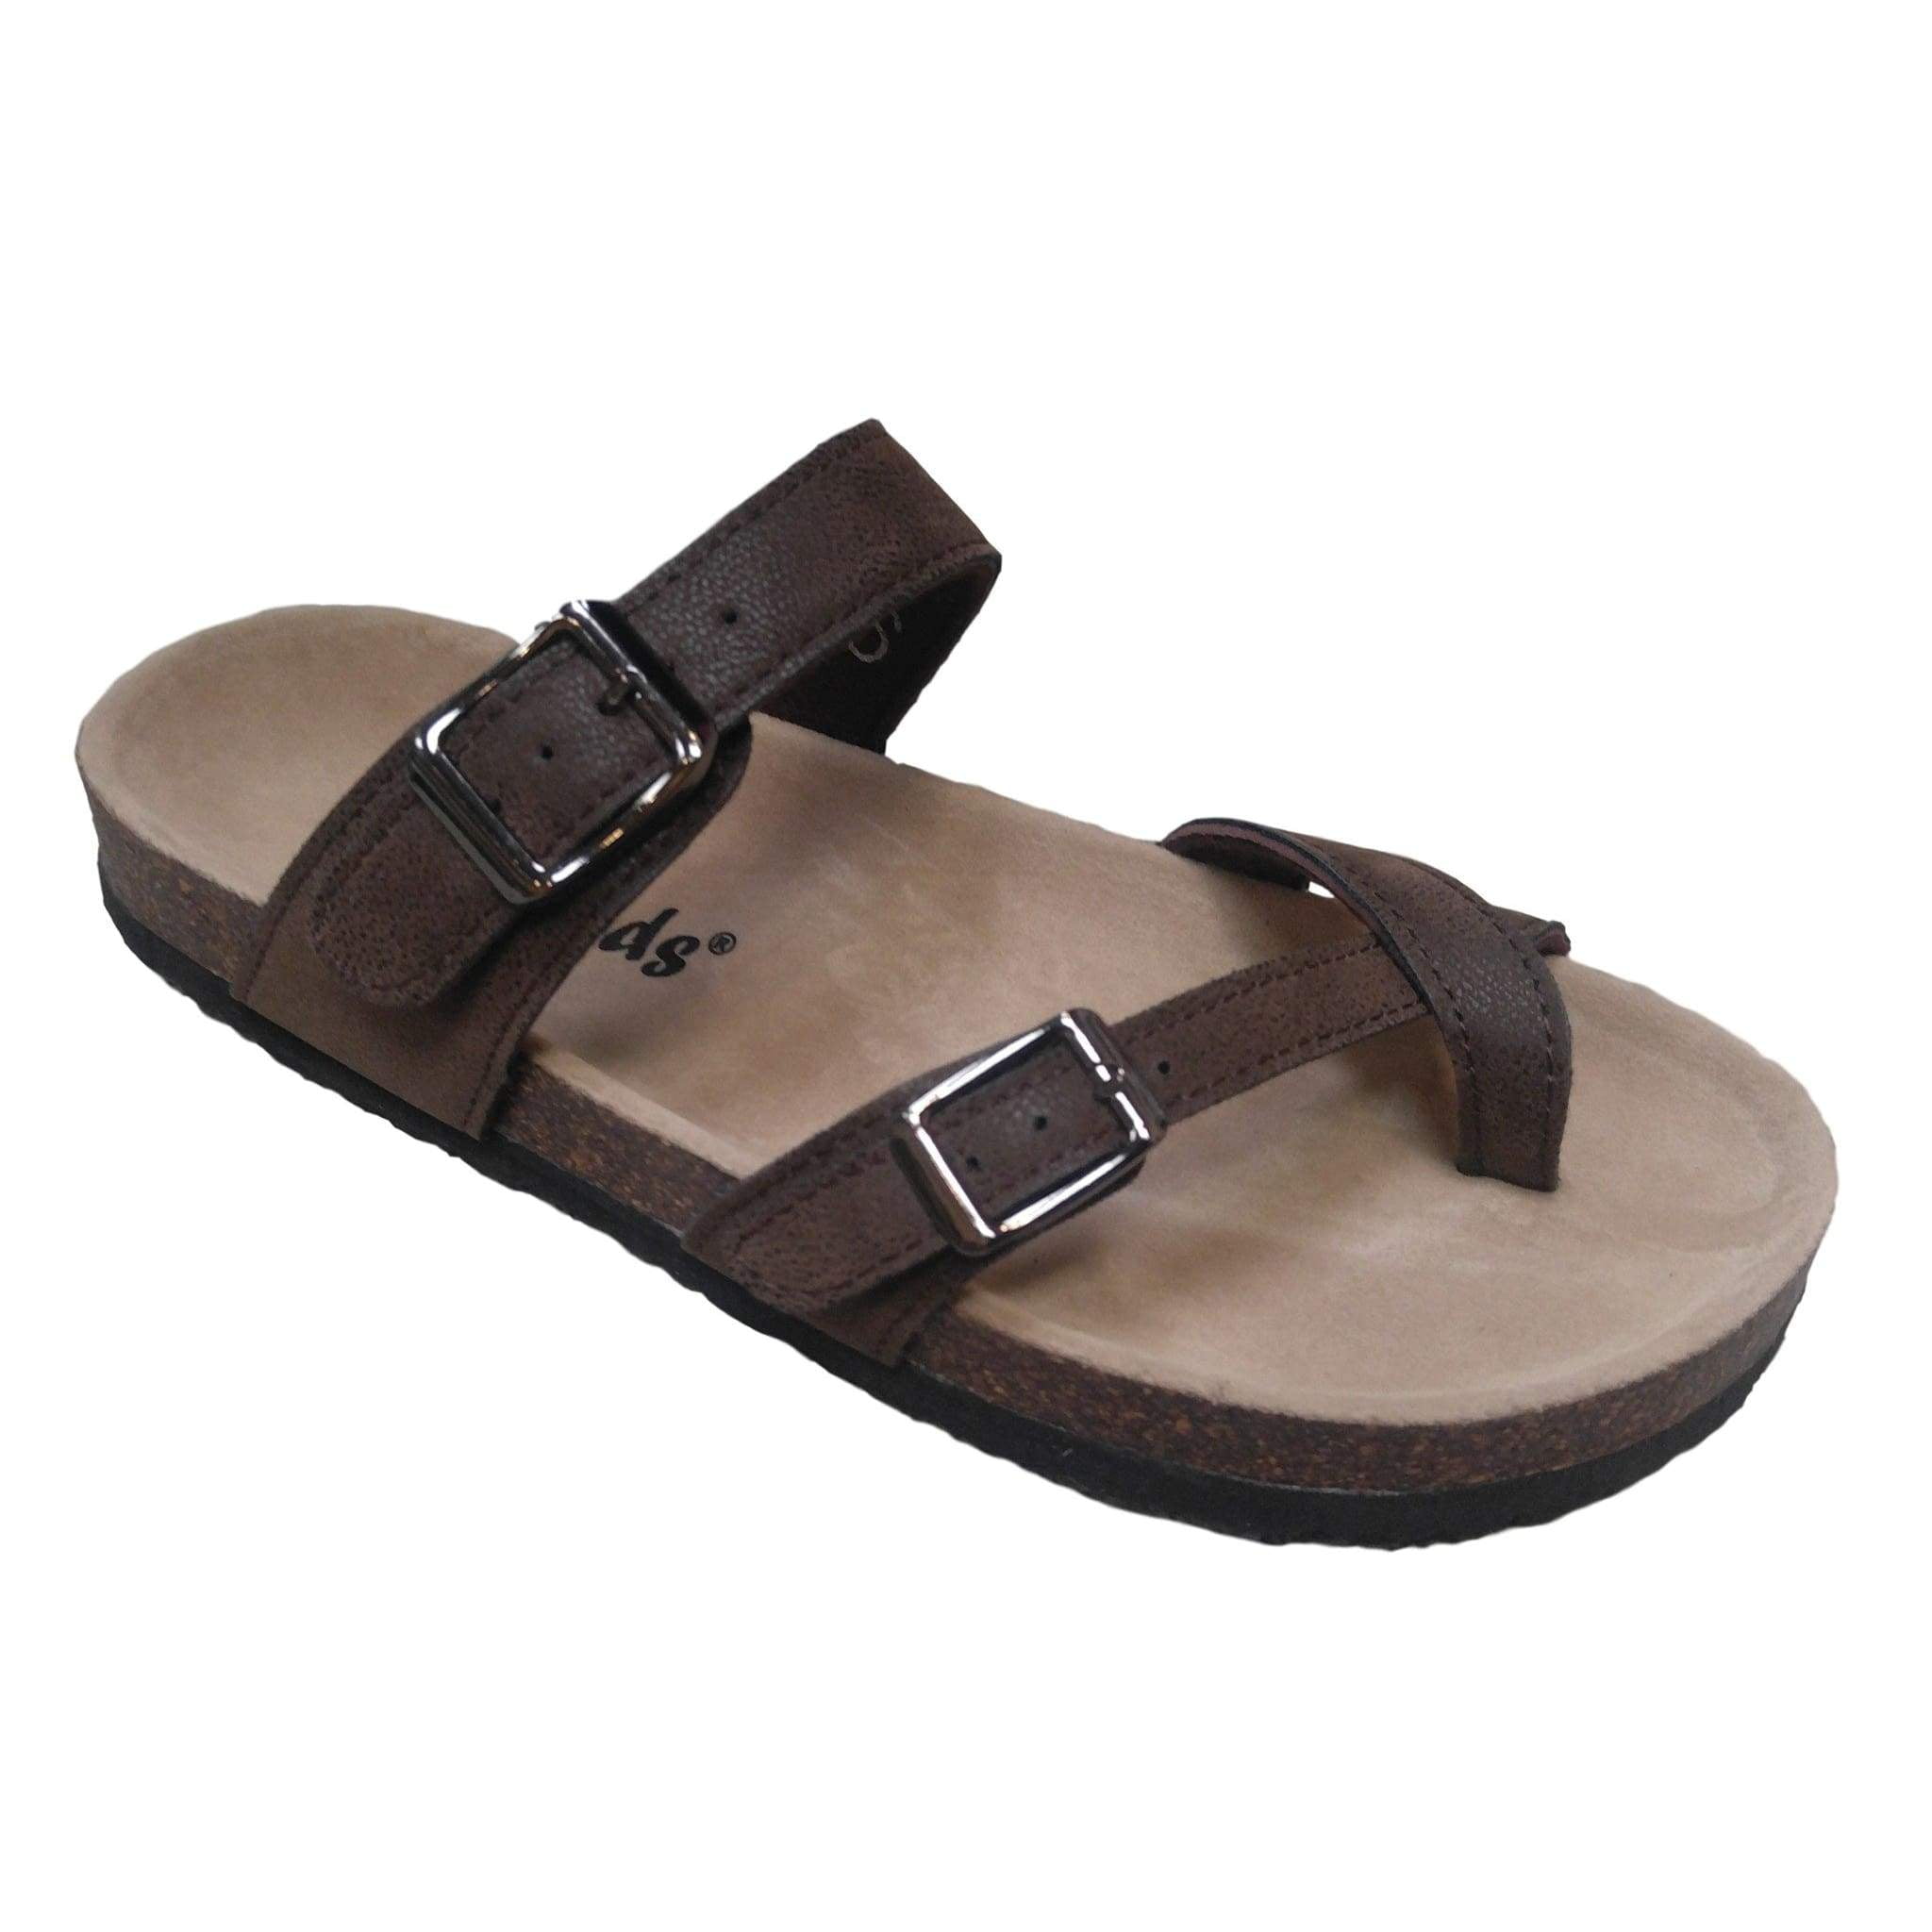 birk style sandals